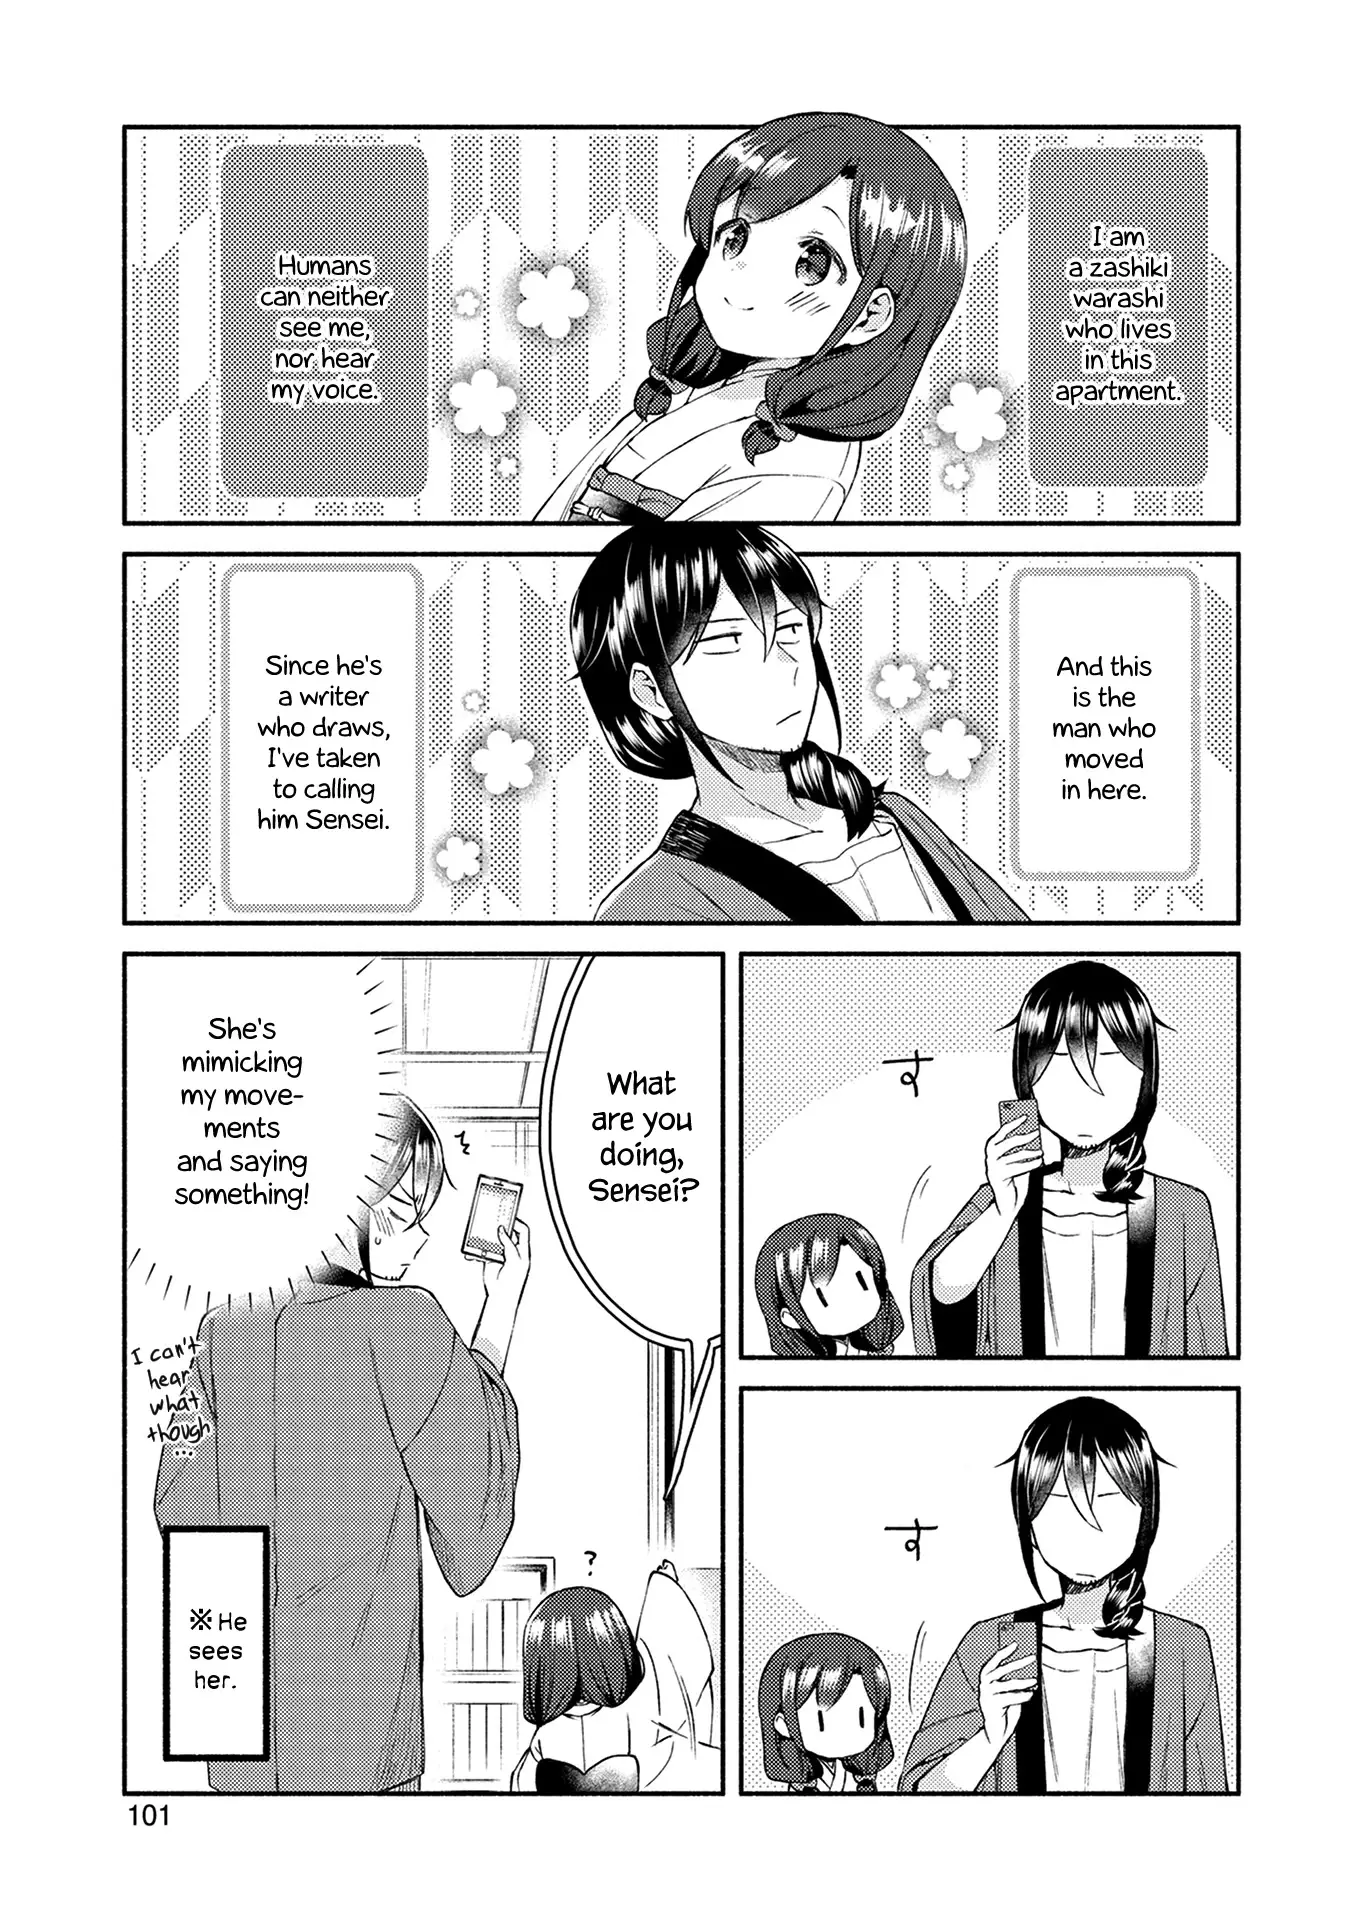 Mangaka-Sensei To Zashiki Warashi - 14 page 1-f30e6b0e